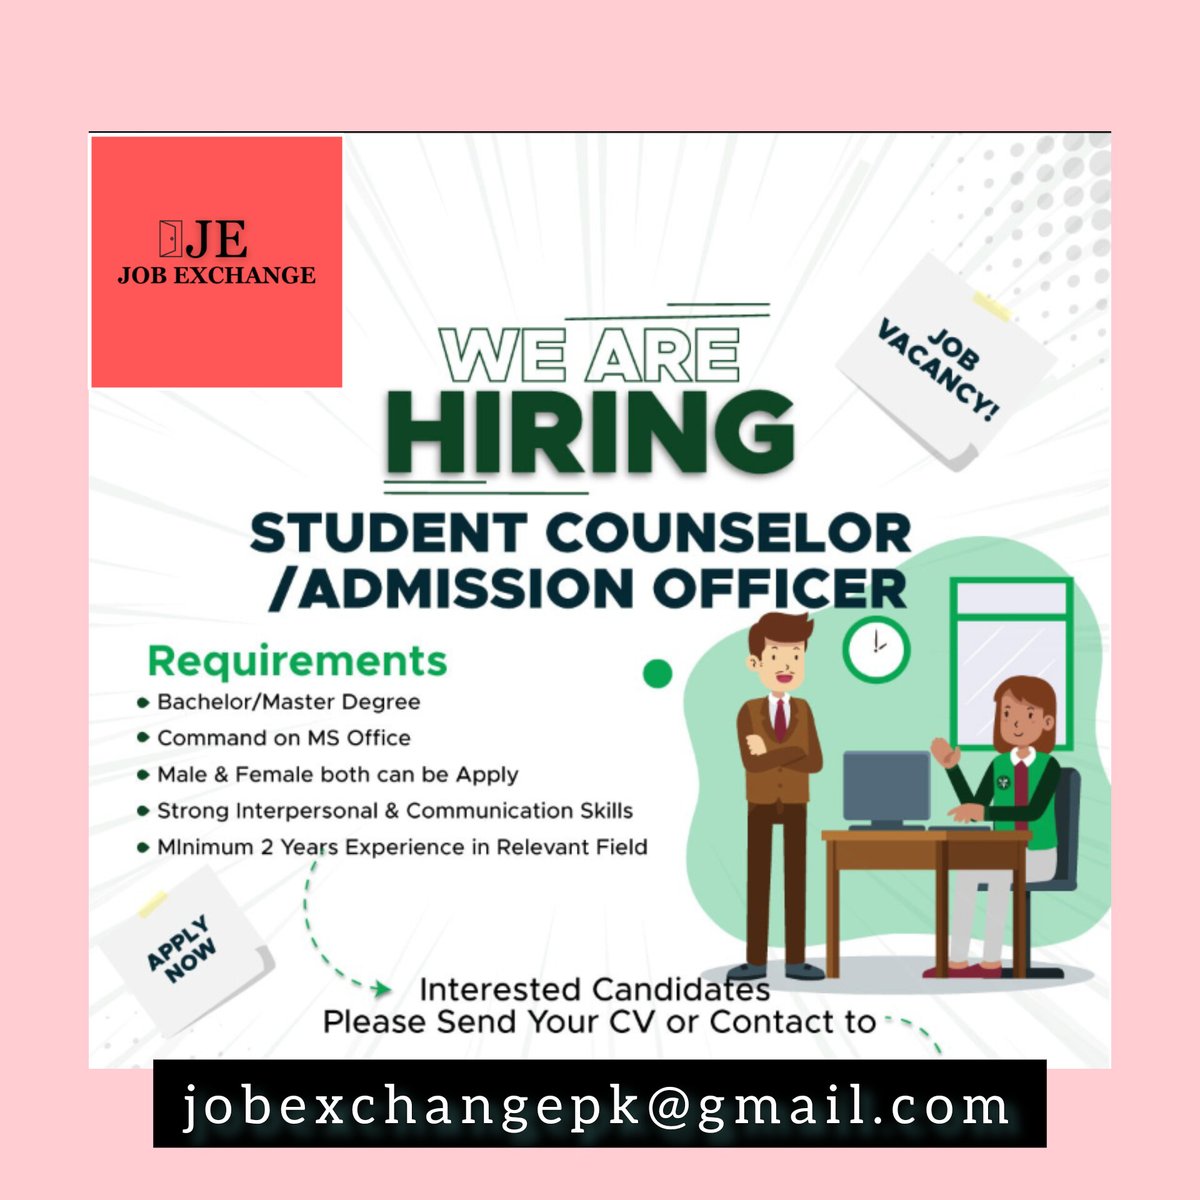 facebook.com/jobexchangepk

instagram.com/jobexchangepk

linkedin.com/in/jobexchange…

tiktok.com/@jobexchangepk

twitter.com/jobexchangepk

jobexchangepk@gmail.com

#jobsinkarachi #Karachi #karachijobs #recruiting